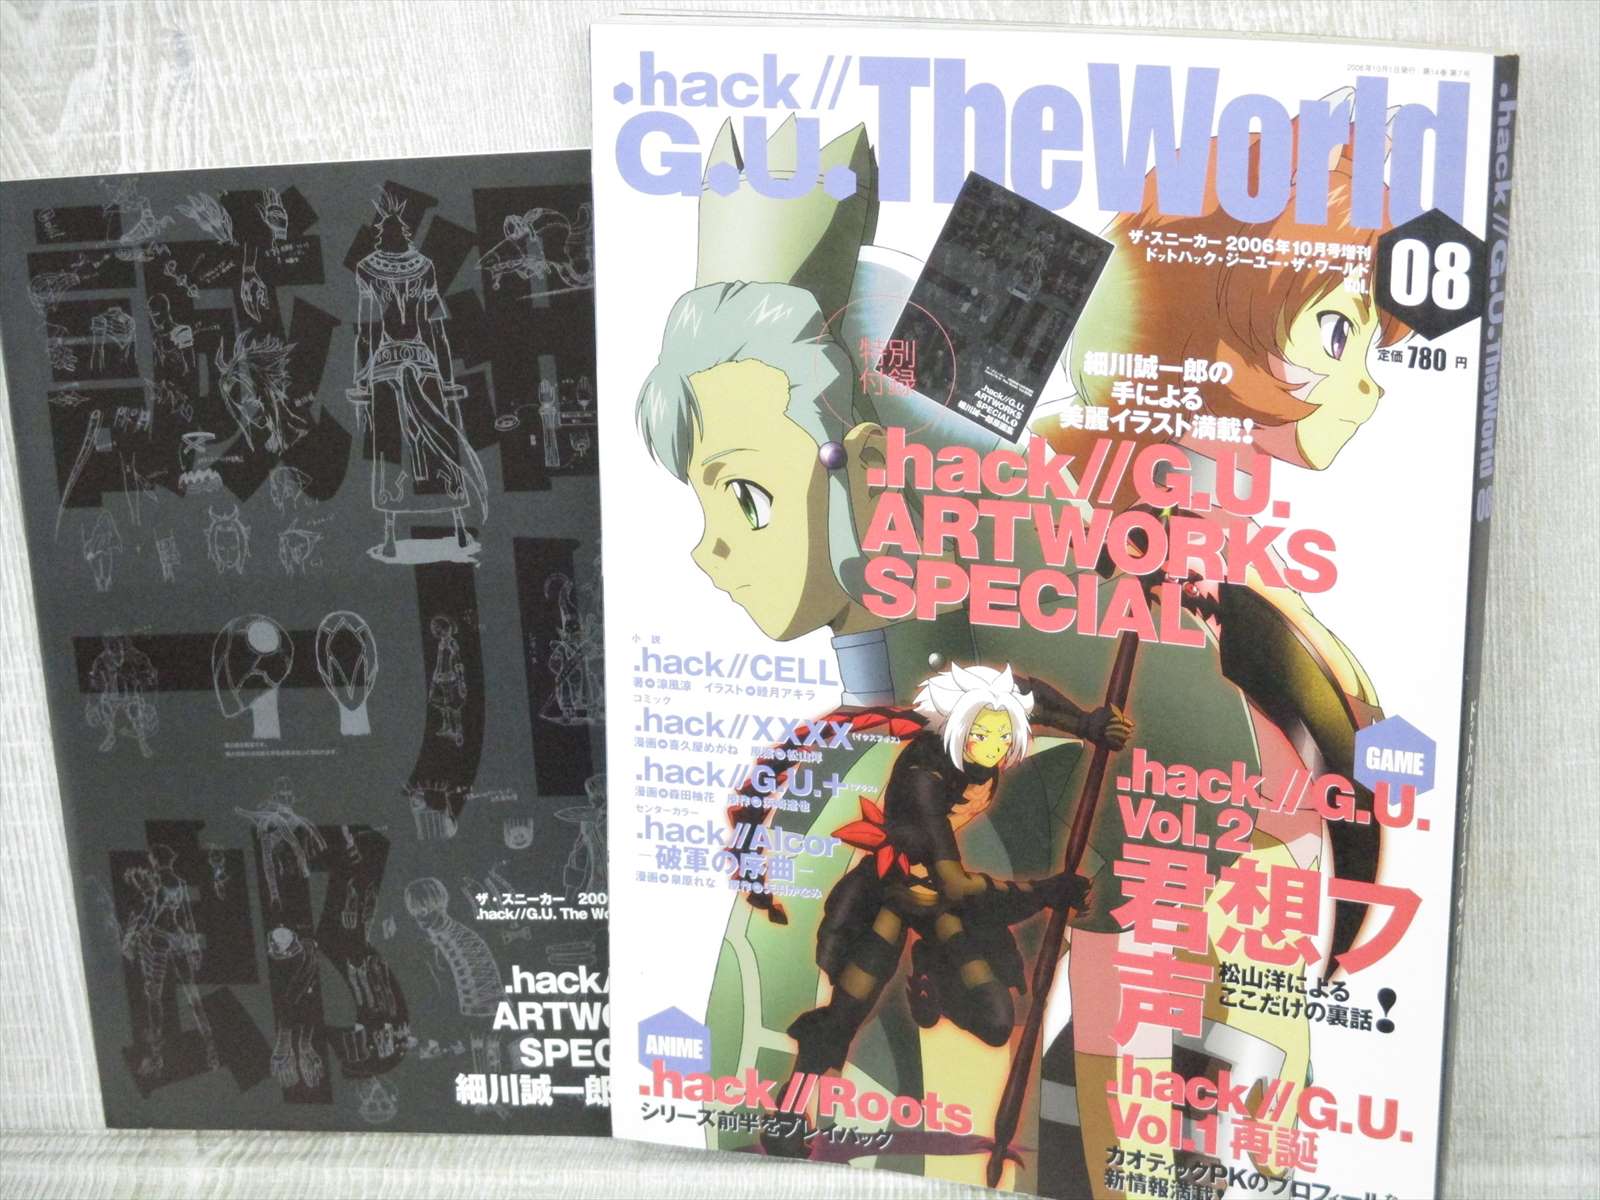 Hack G U The World 08 Magazine 10 06 W Booklet Postcard Art Fan Book Kd Ebay